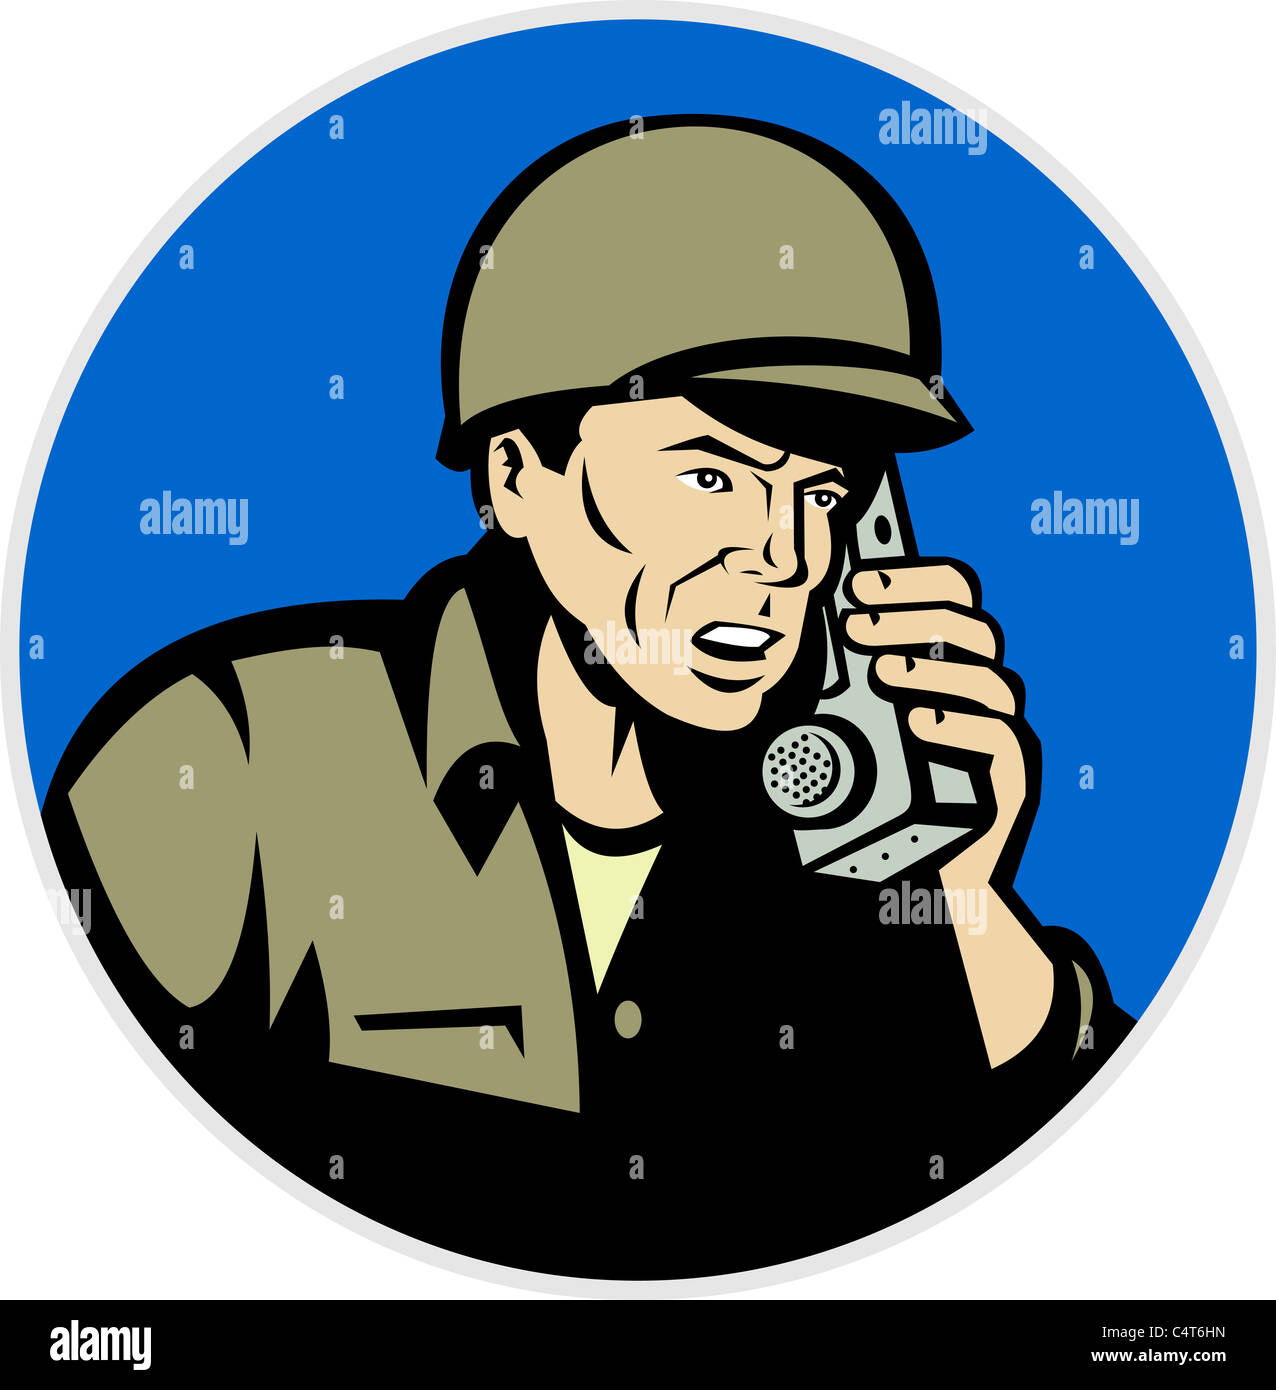 Abbildung eines Zweiter Weltkrieg Soldaten sprechen auf Radio Walkie Talkie Handy getan im retro-Stil im inneren Kreis Stockfoto